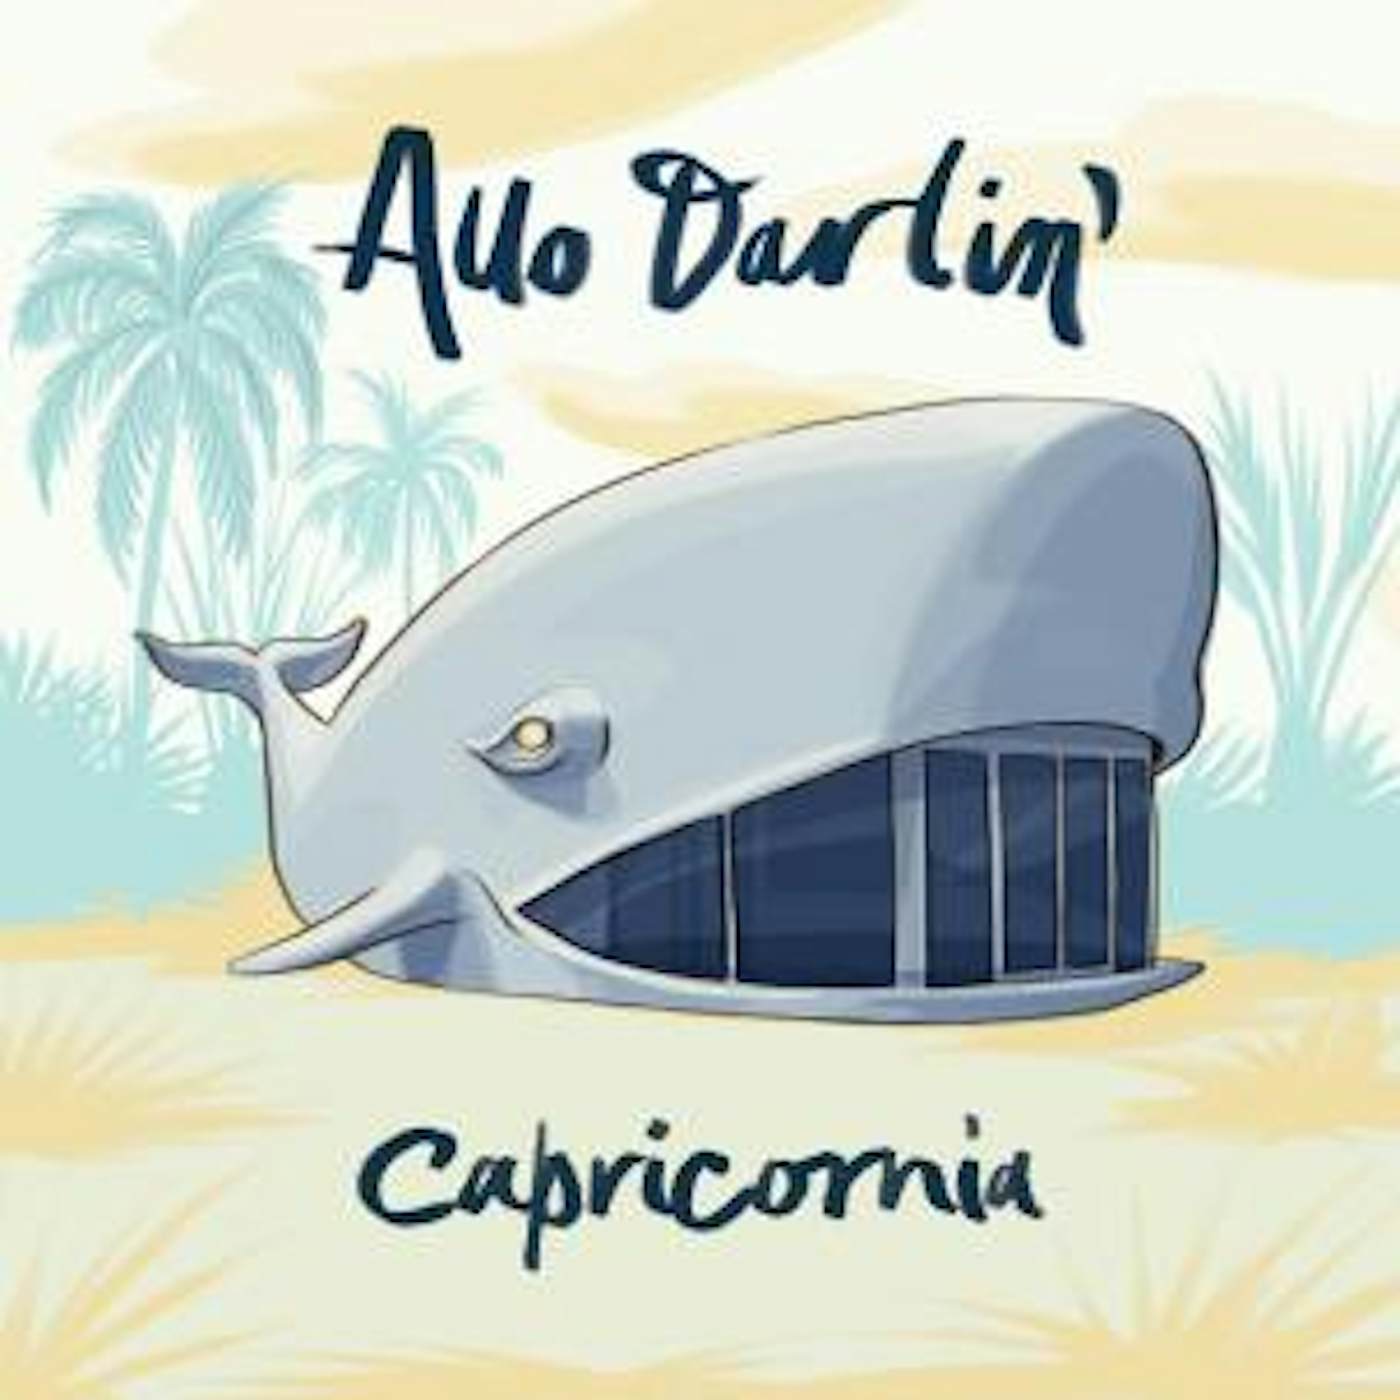 Allo Darlin' Capricornia Vinyl Record